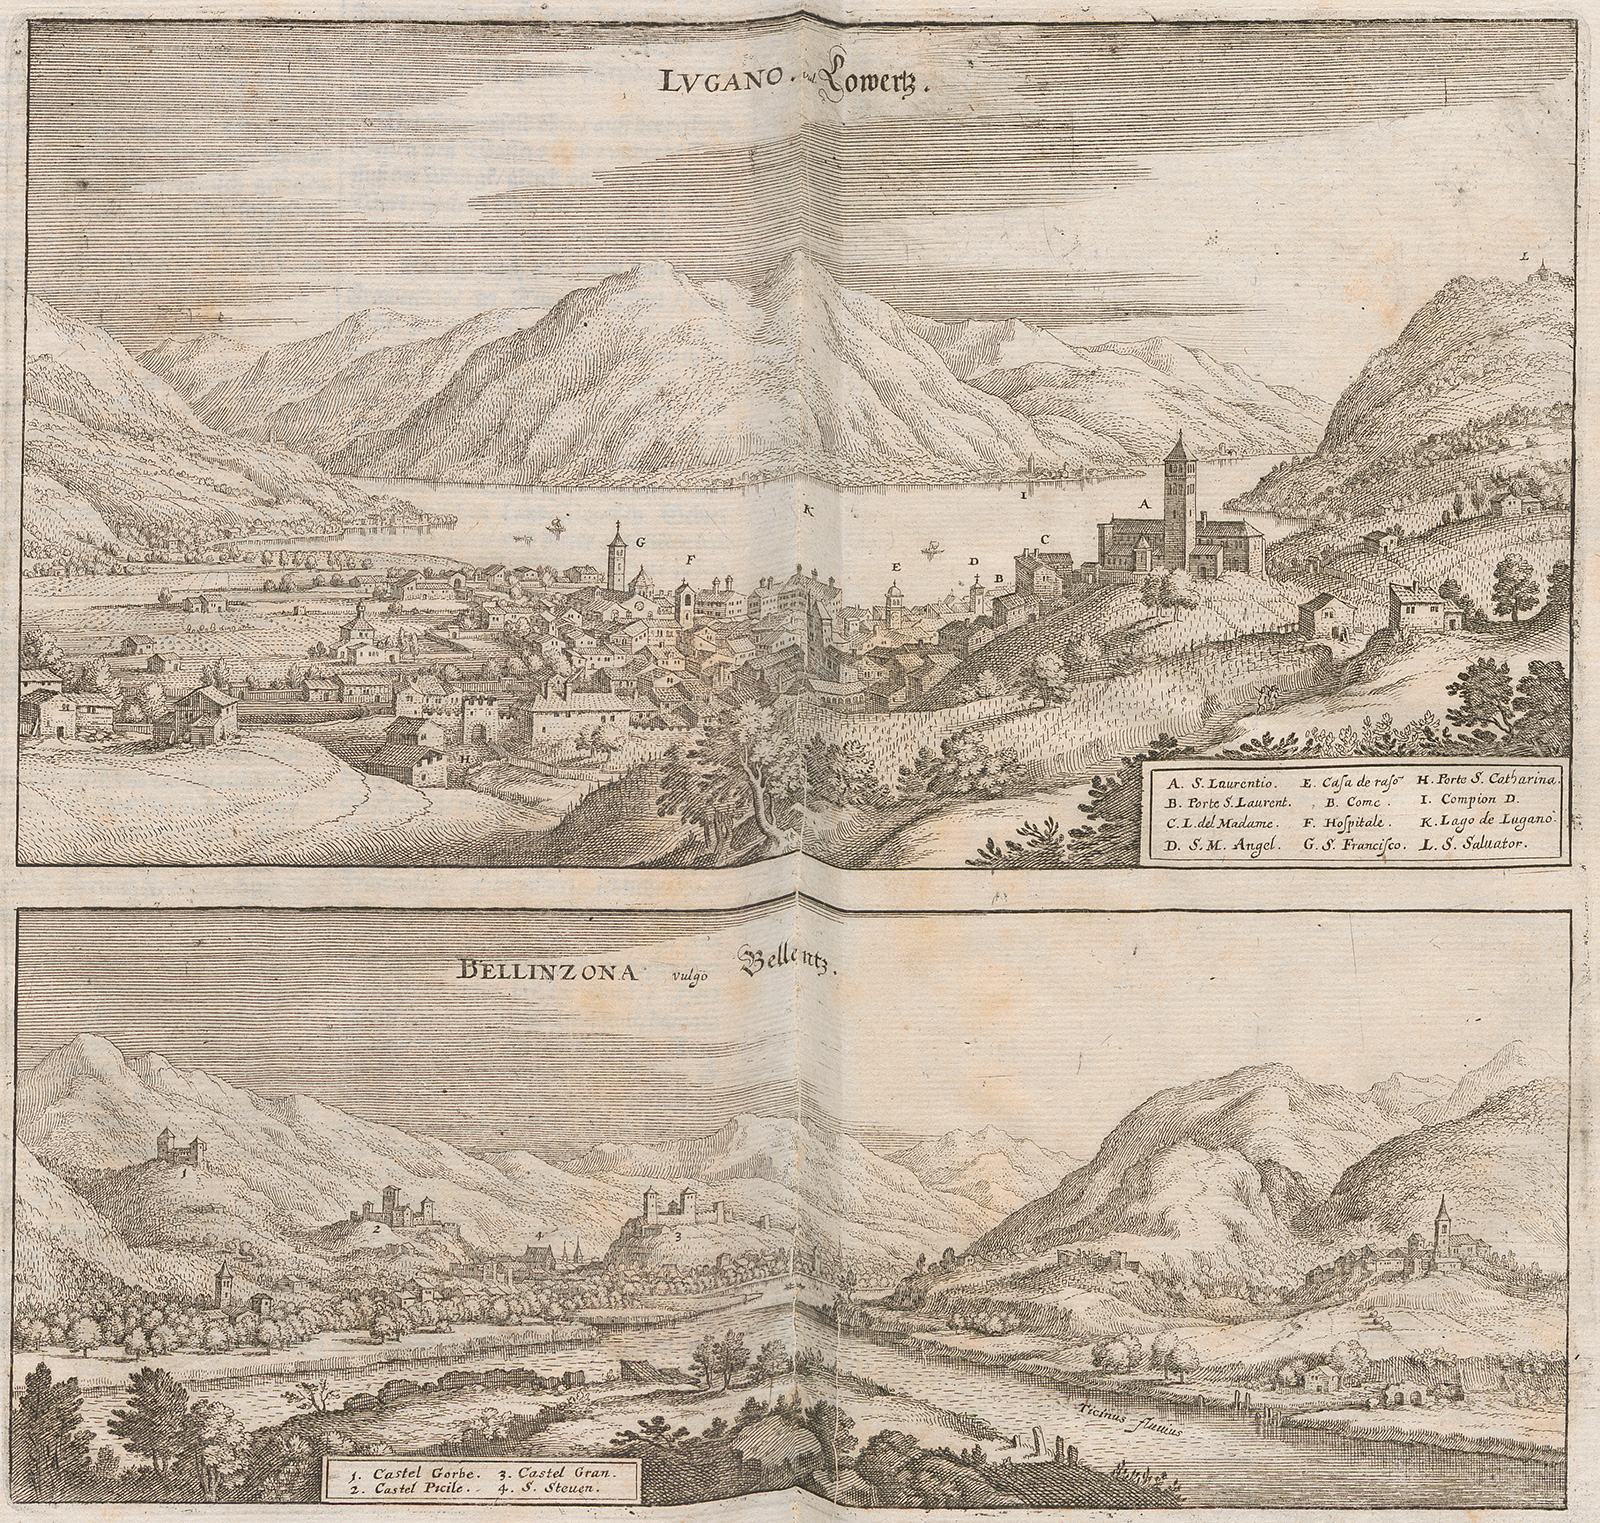 مدينتي لوغانو وبيلينزونا في نقش خشبي للفنان ماتيوس ميريان، حوالي عام 1654.